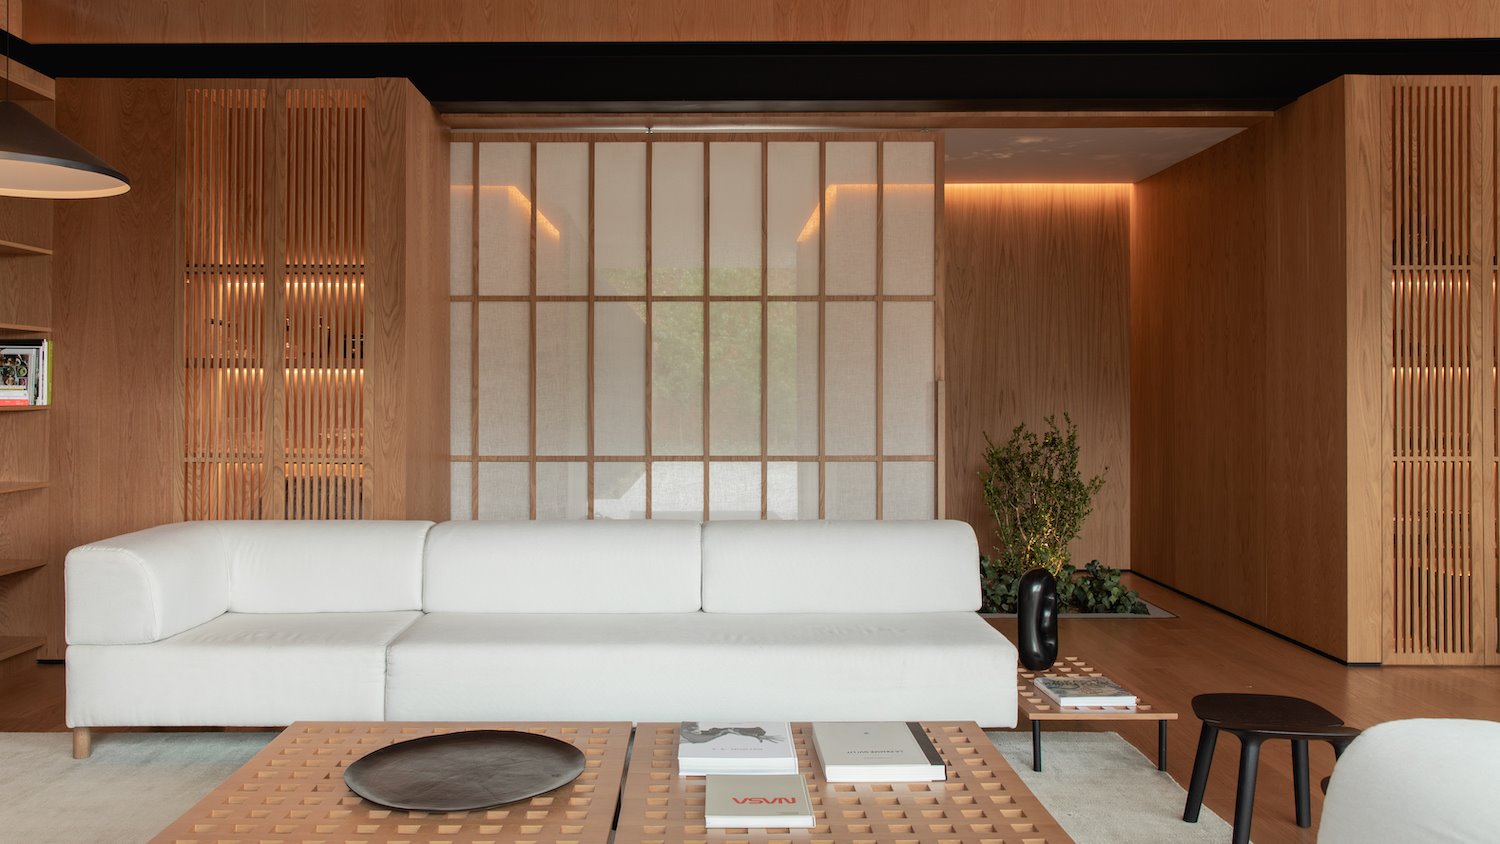 Salon con puertas correderas y sofa de color blanco de la casa del cantante J Balwin en Medellin